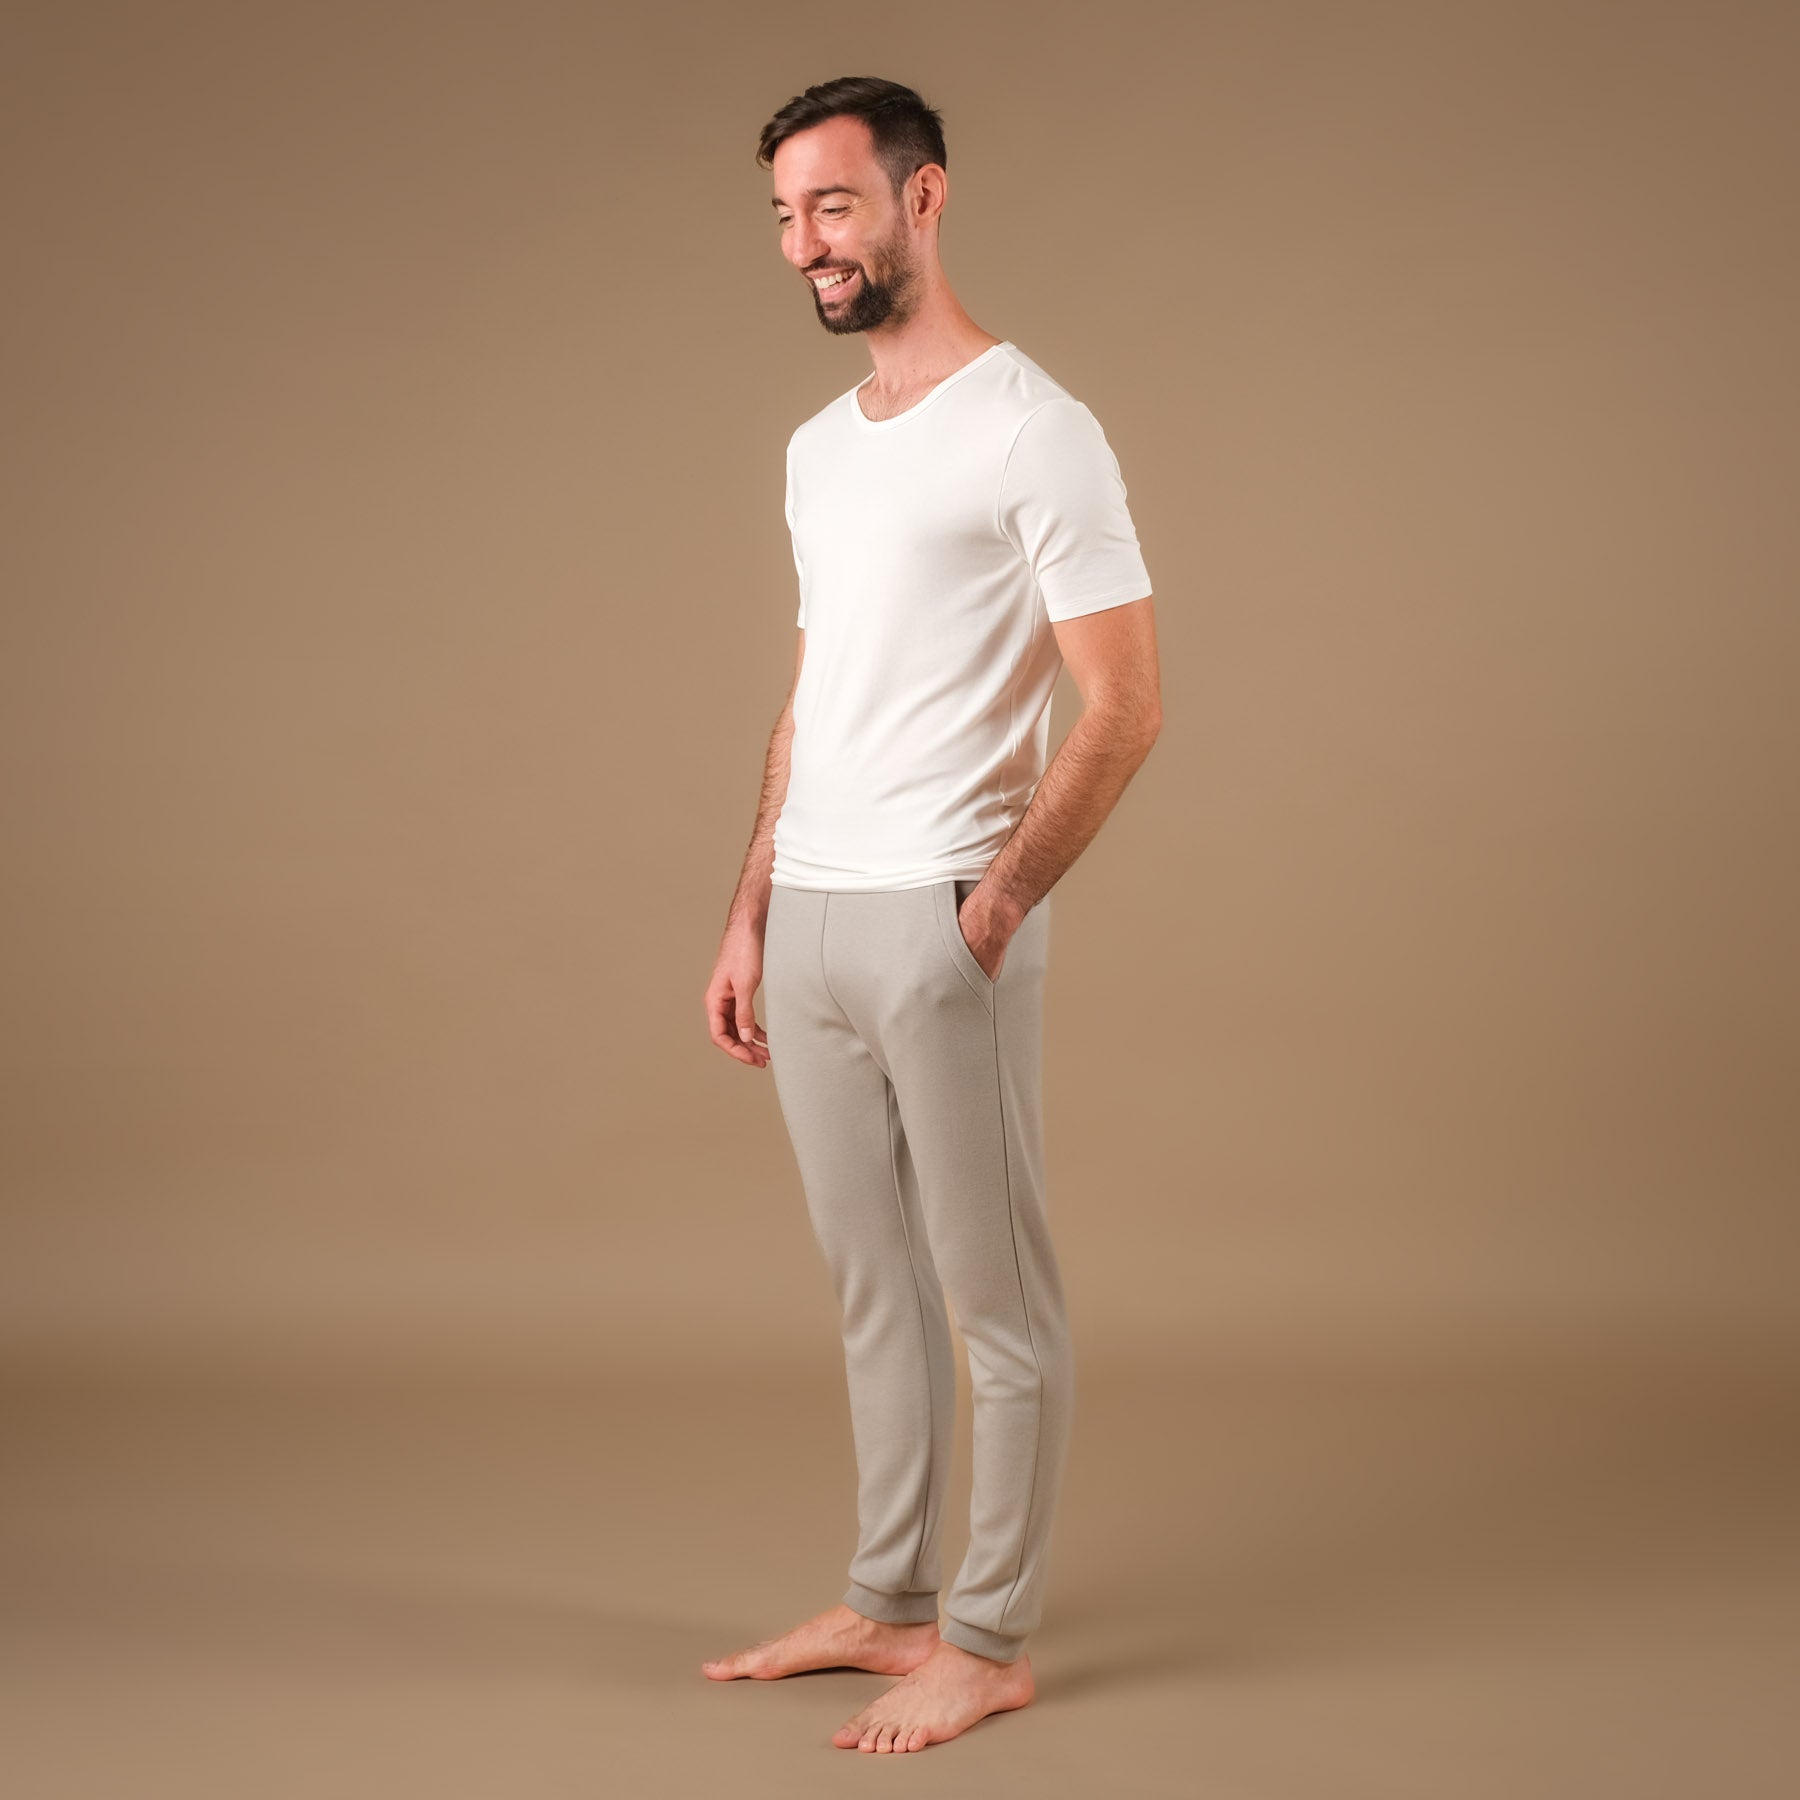 Shirt de yoga pour hommes Classy à manches courtes blanc